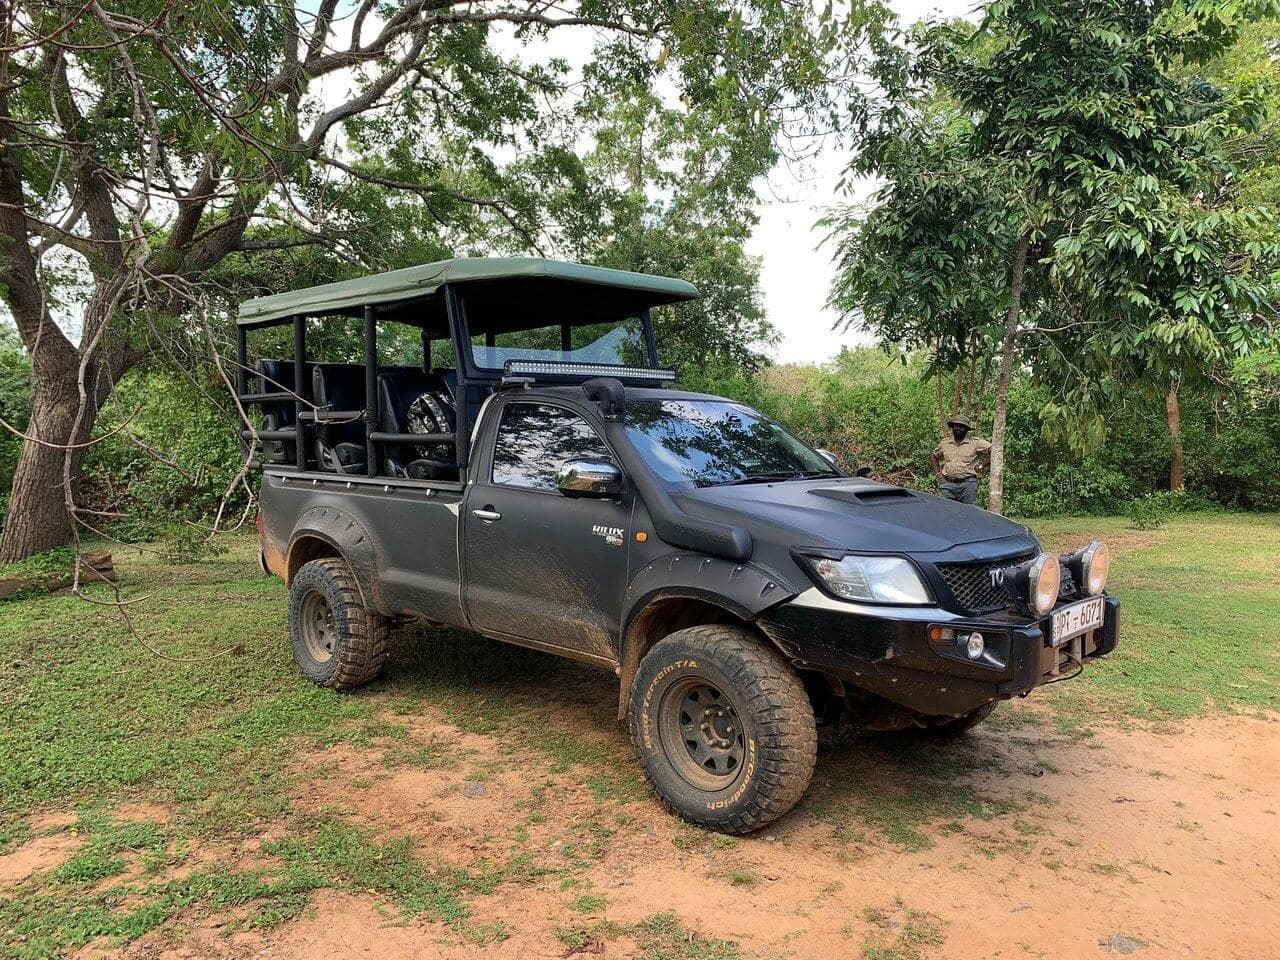 一辆丰田出租车升级为斯里兰卡亚拉国家公园野生动物园使用的野生动物园车辆。